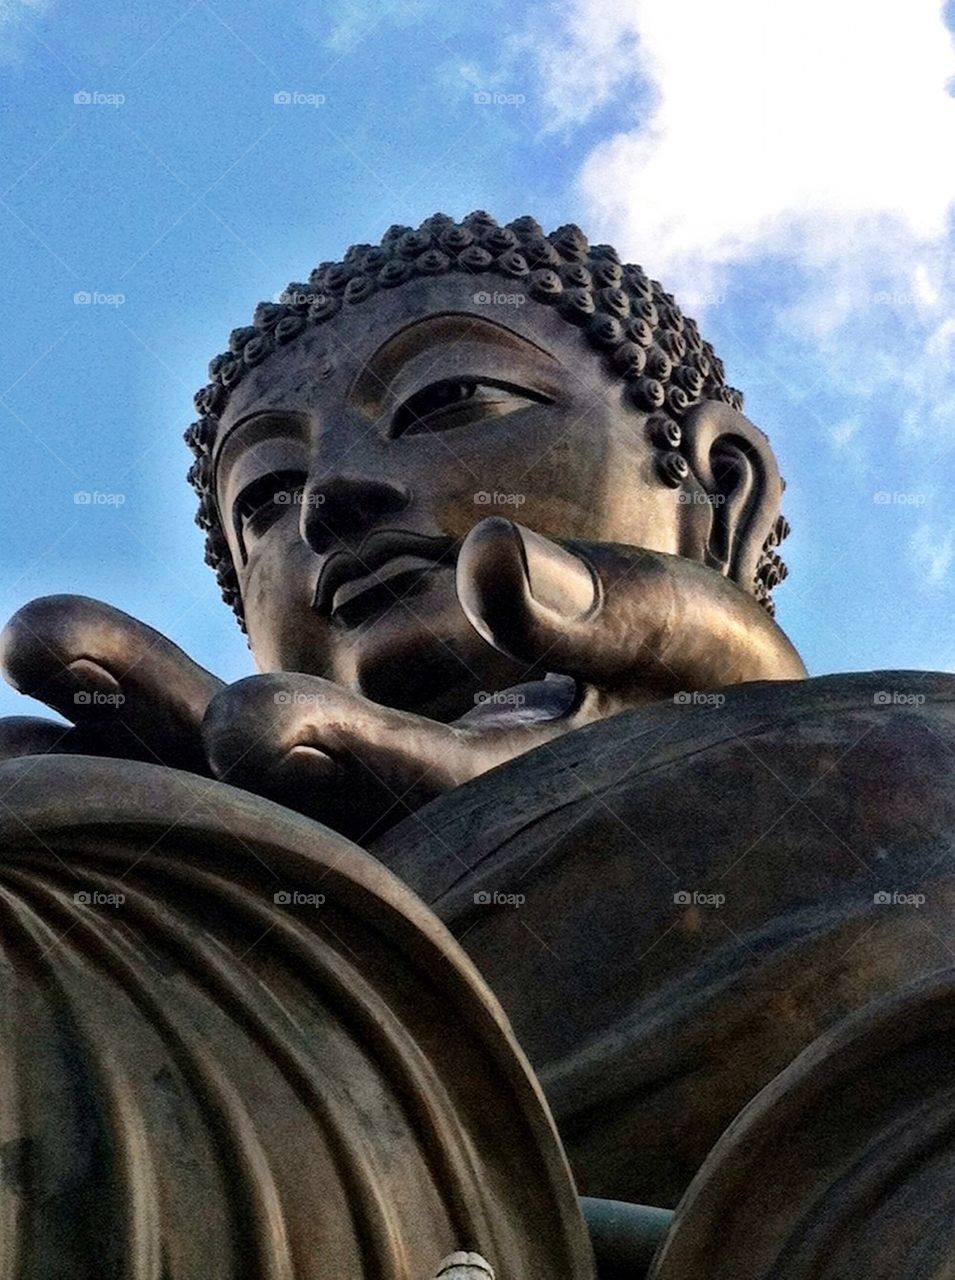 Tian Tan Buddha-Hong Kong